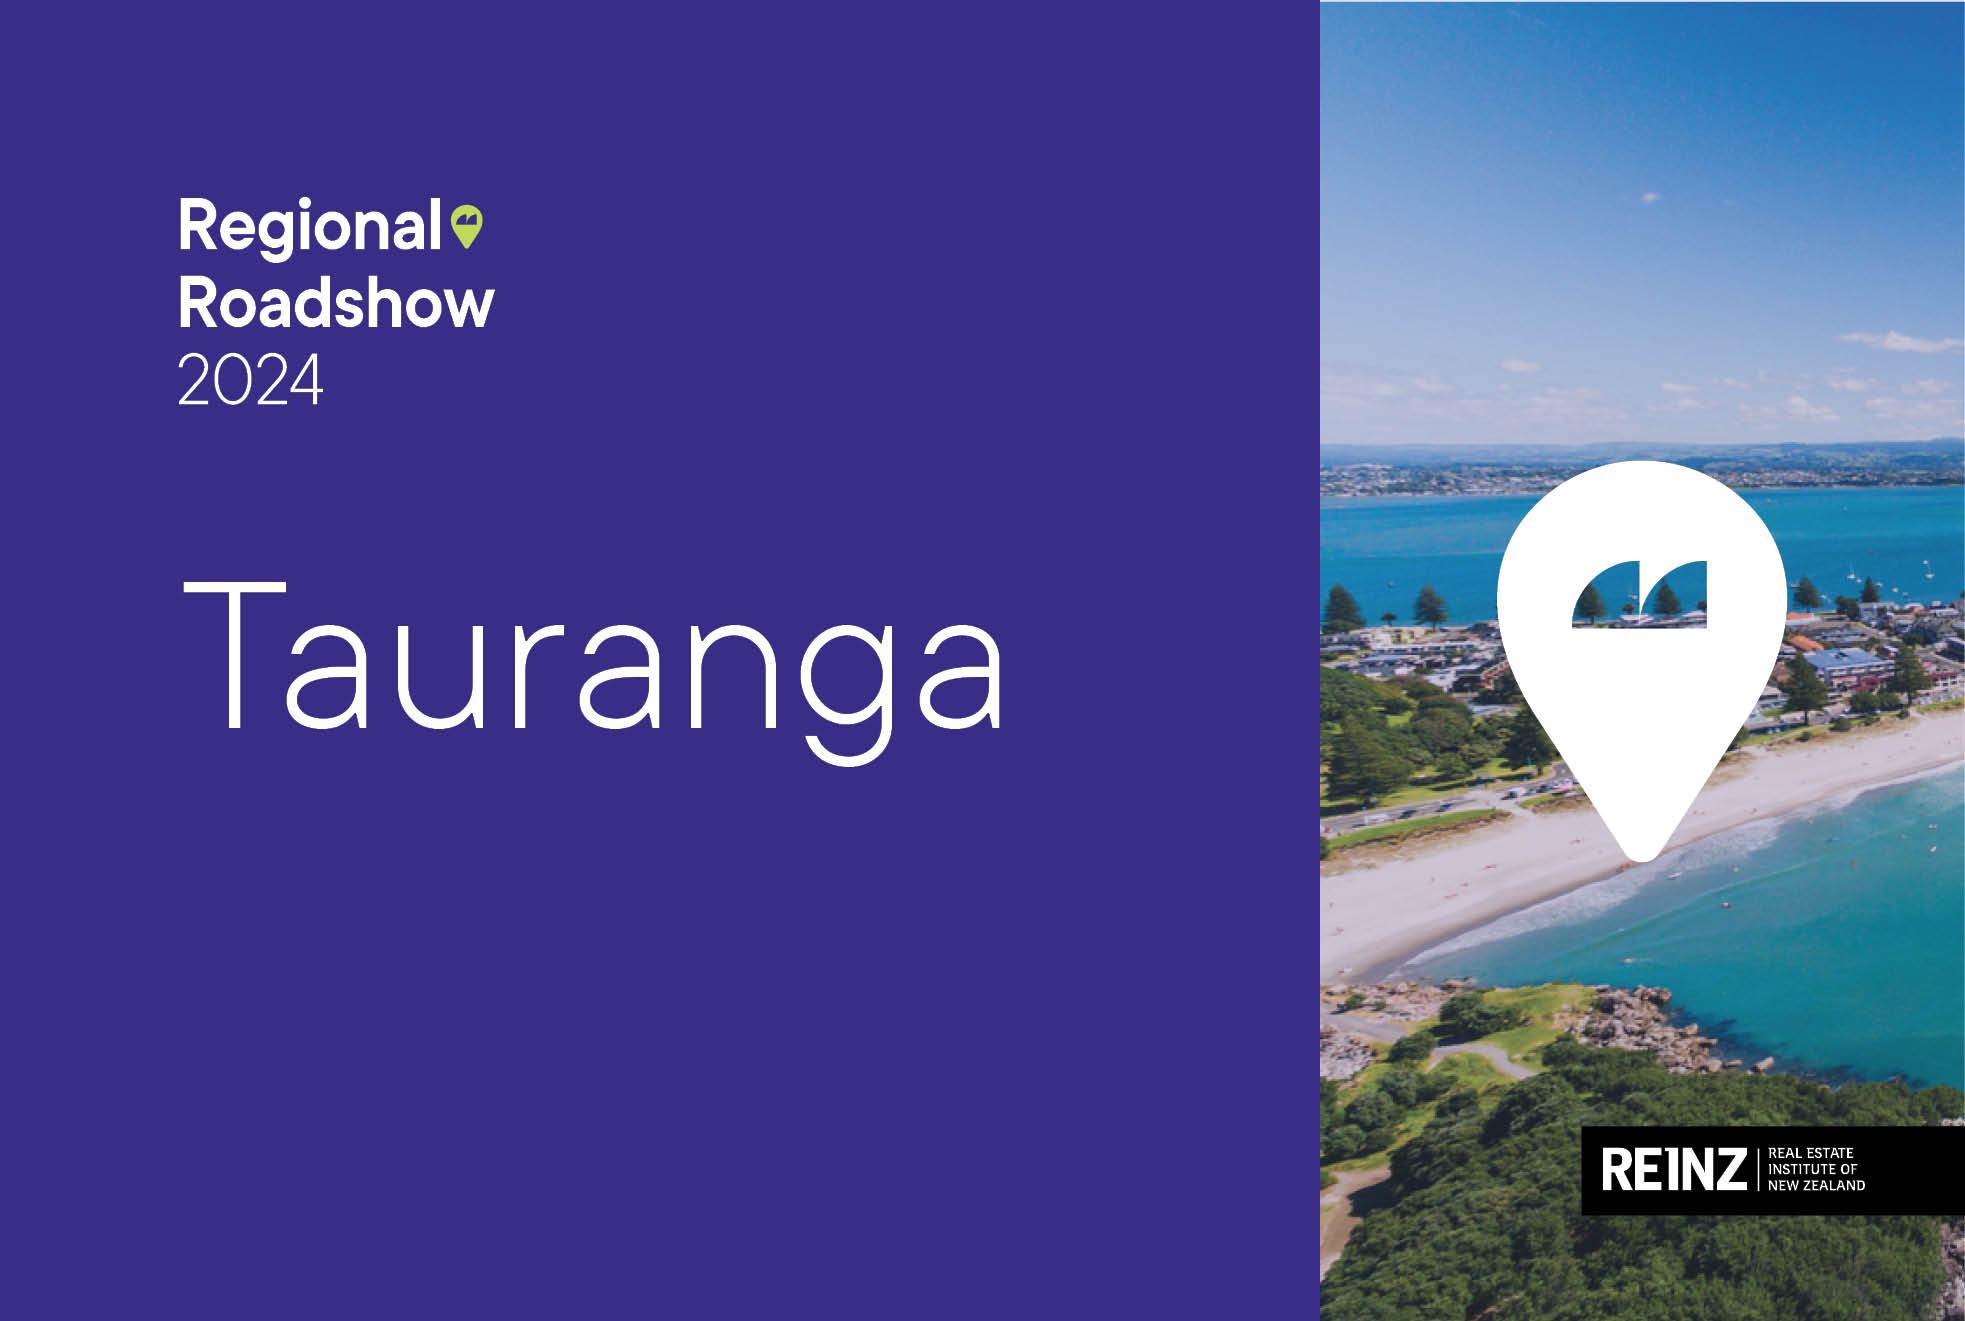 REINZ Regional Roadshow Tauranga